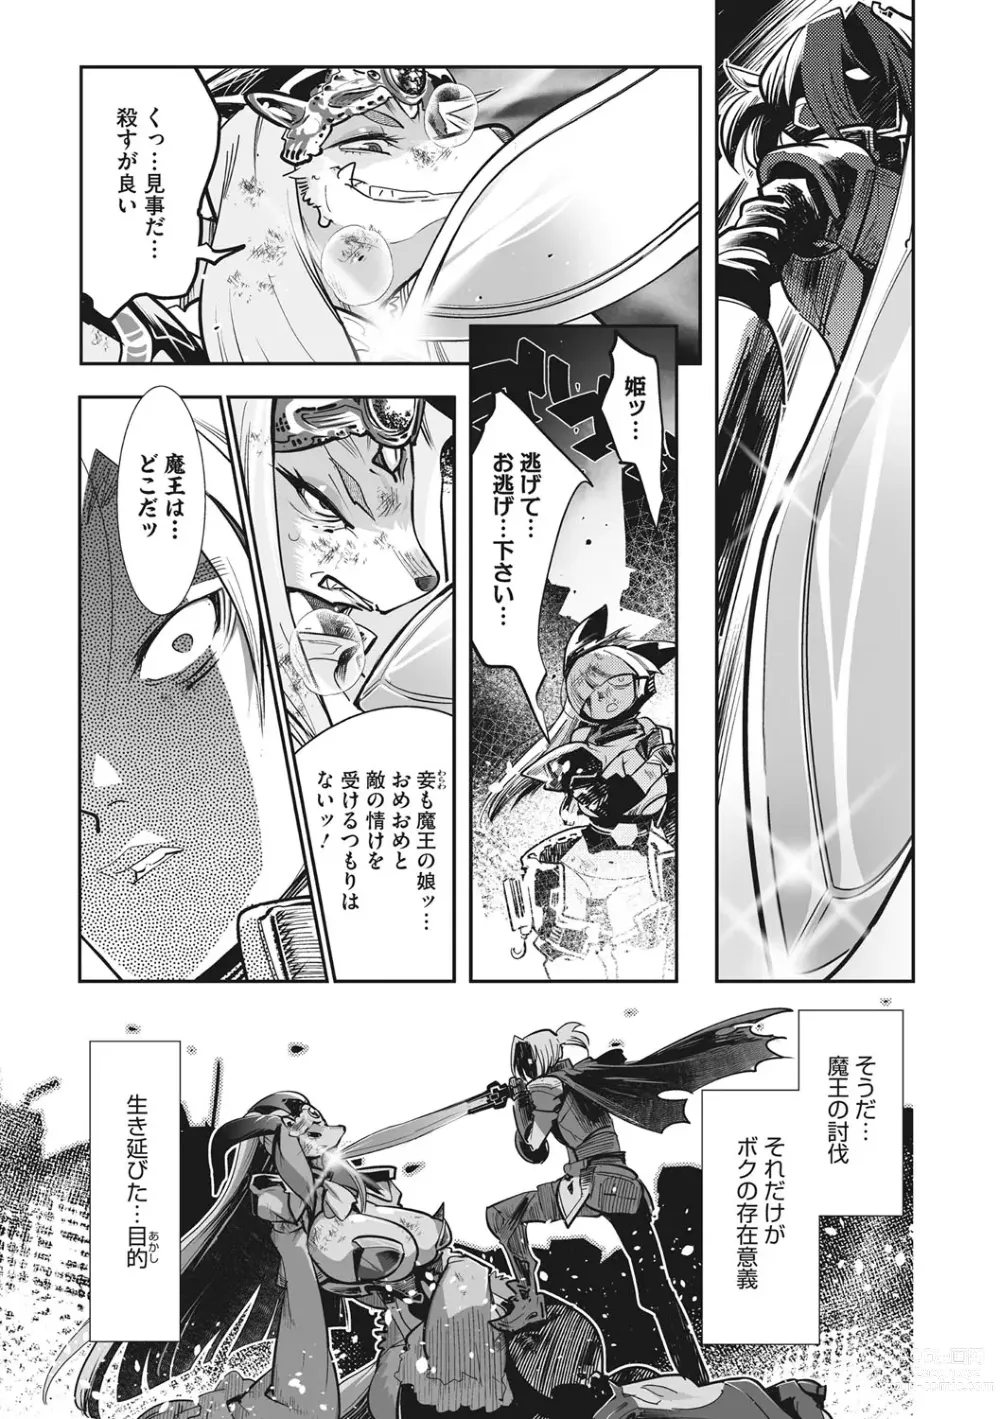 Page 4 of manga Kemono to Koishite Nani ga Warui!